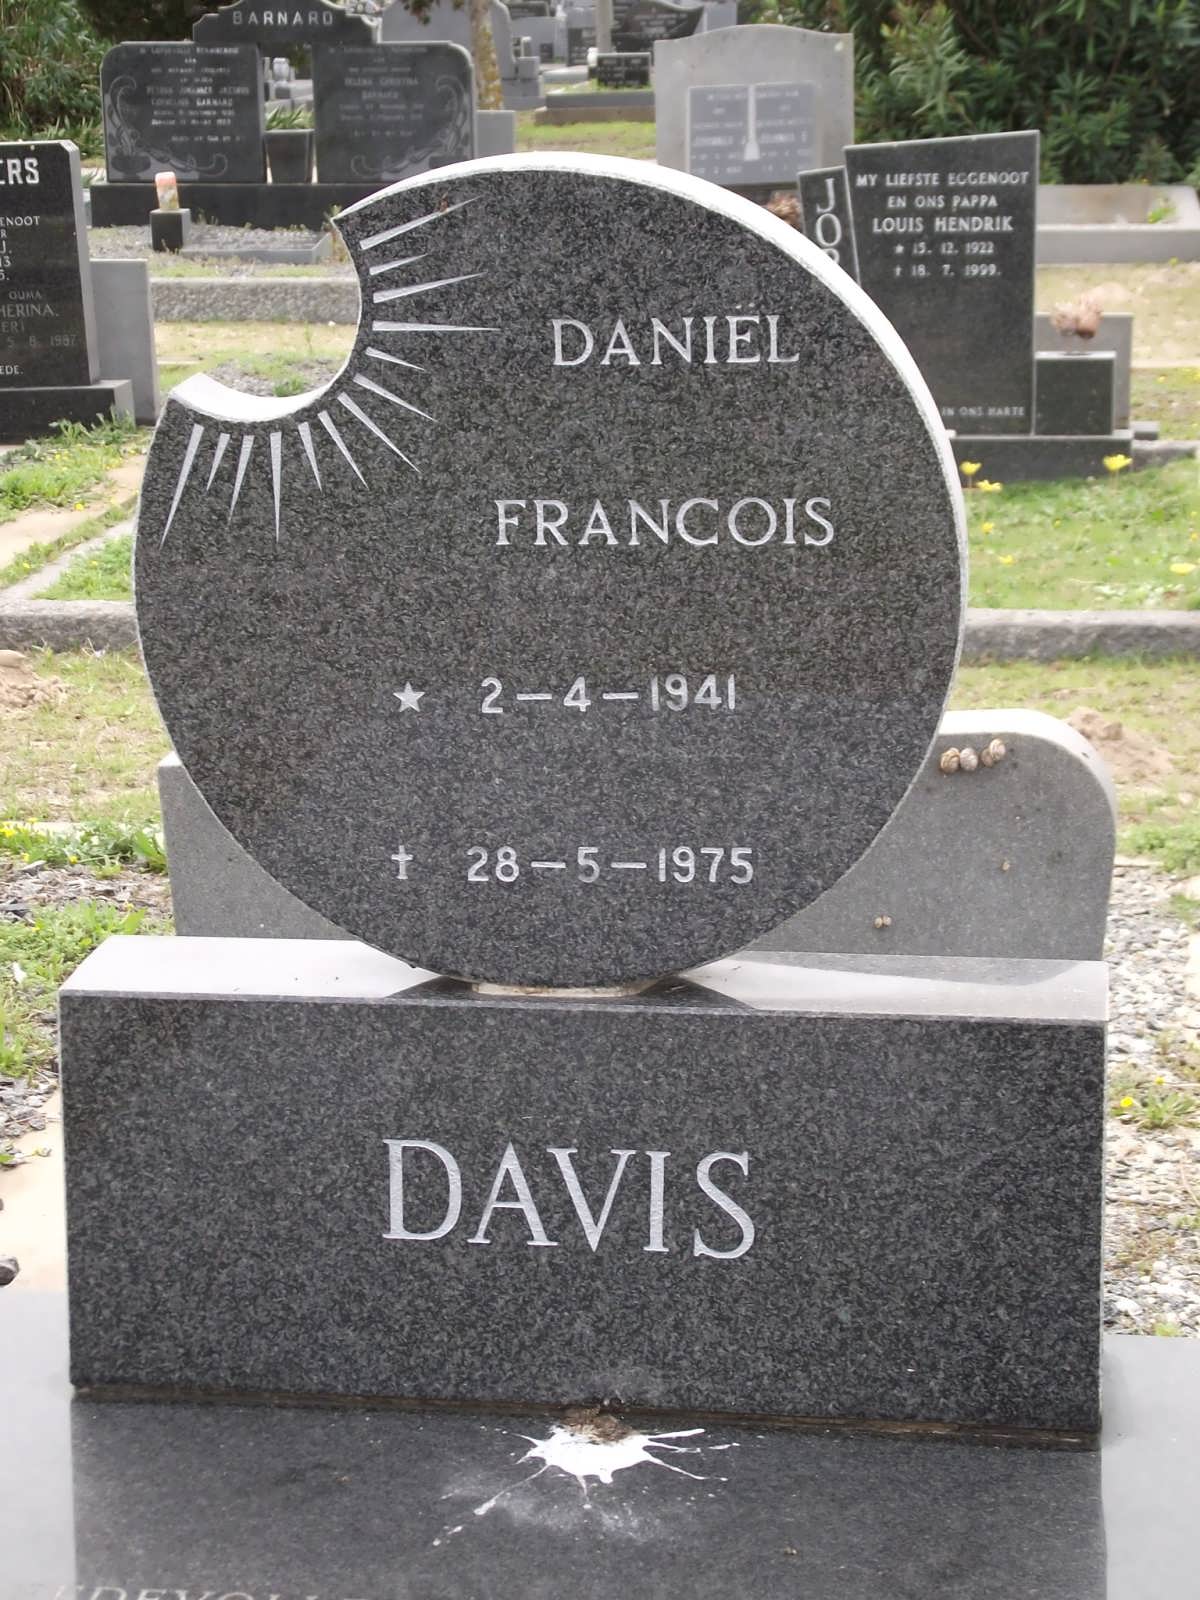 DAVIS Daniel Francois 1941-1975